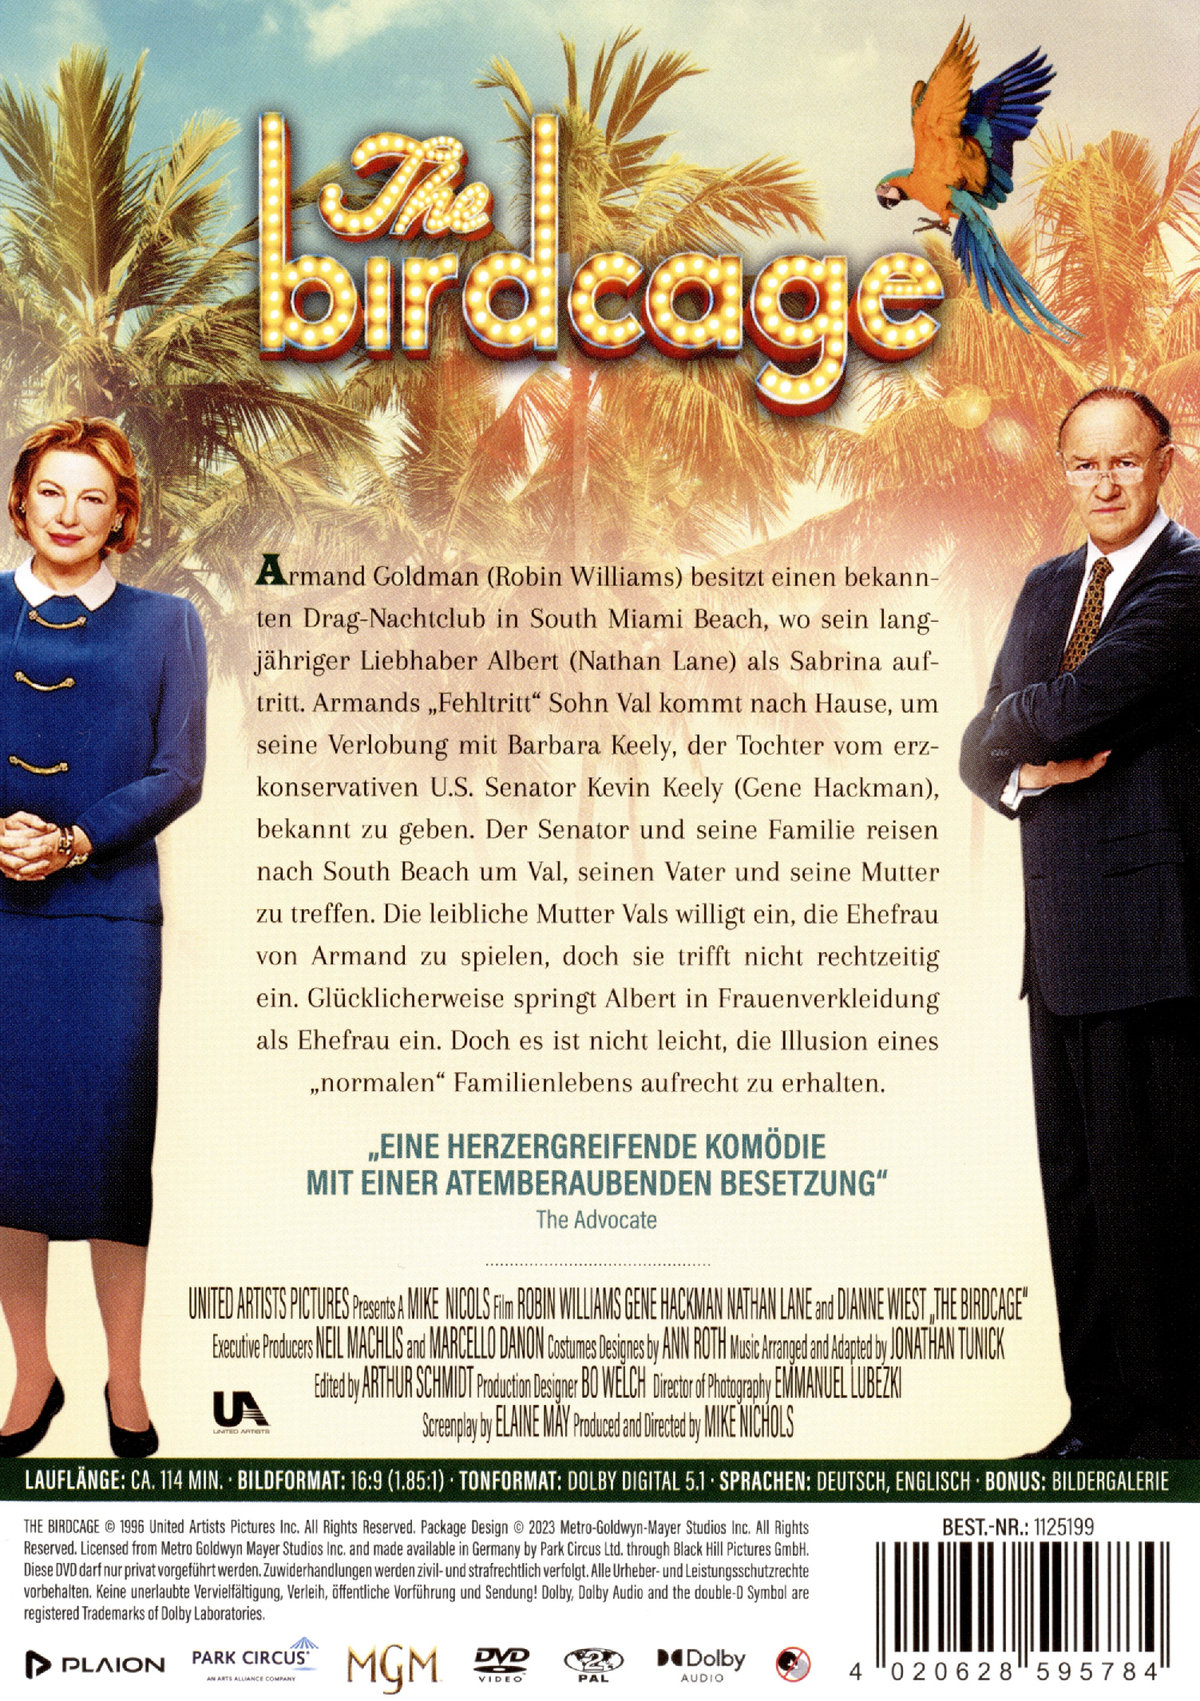 Birdcage, The - Ein Paradies für schrille Vögel